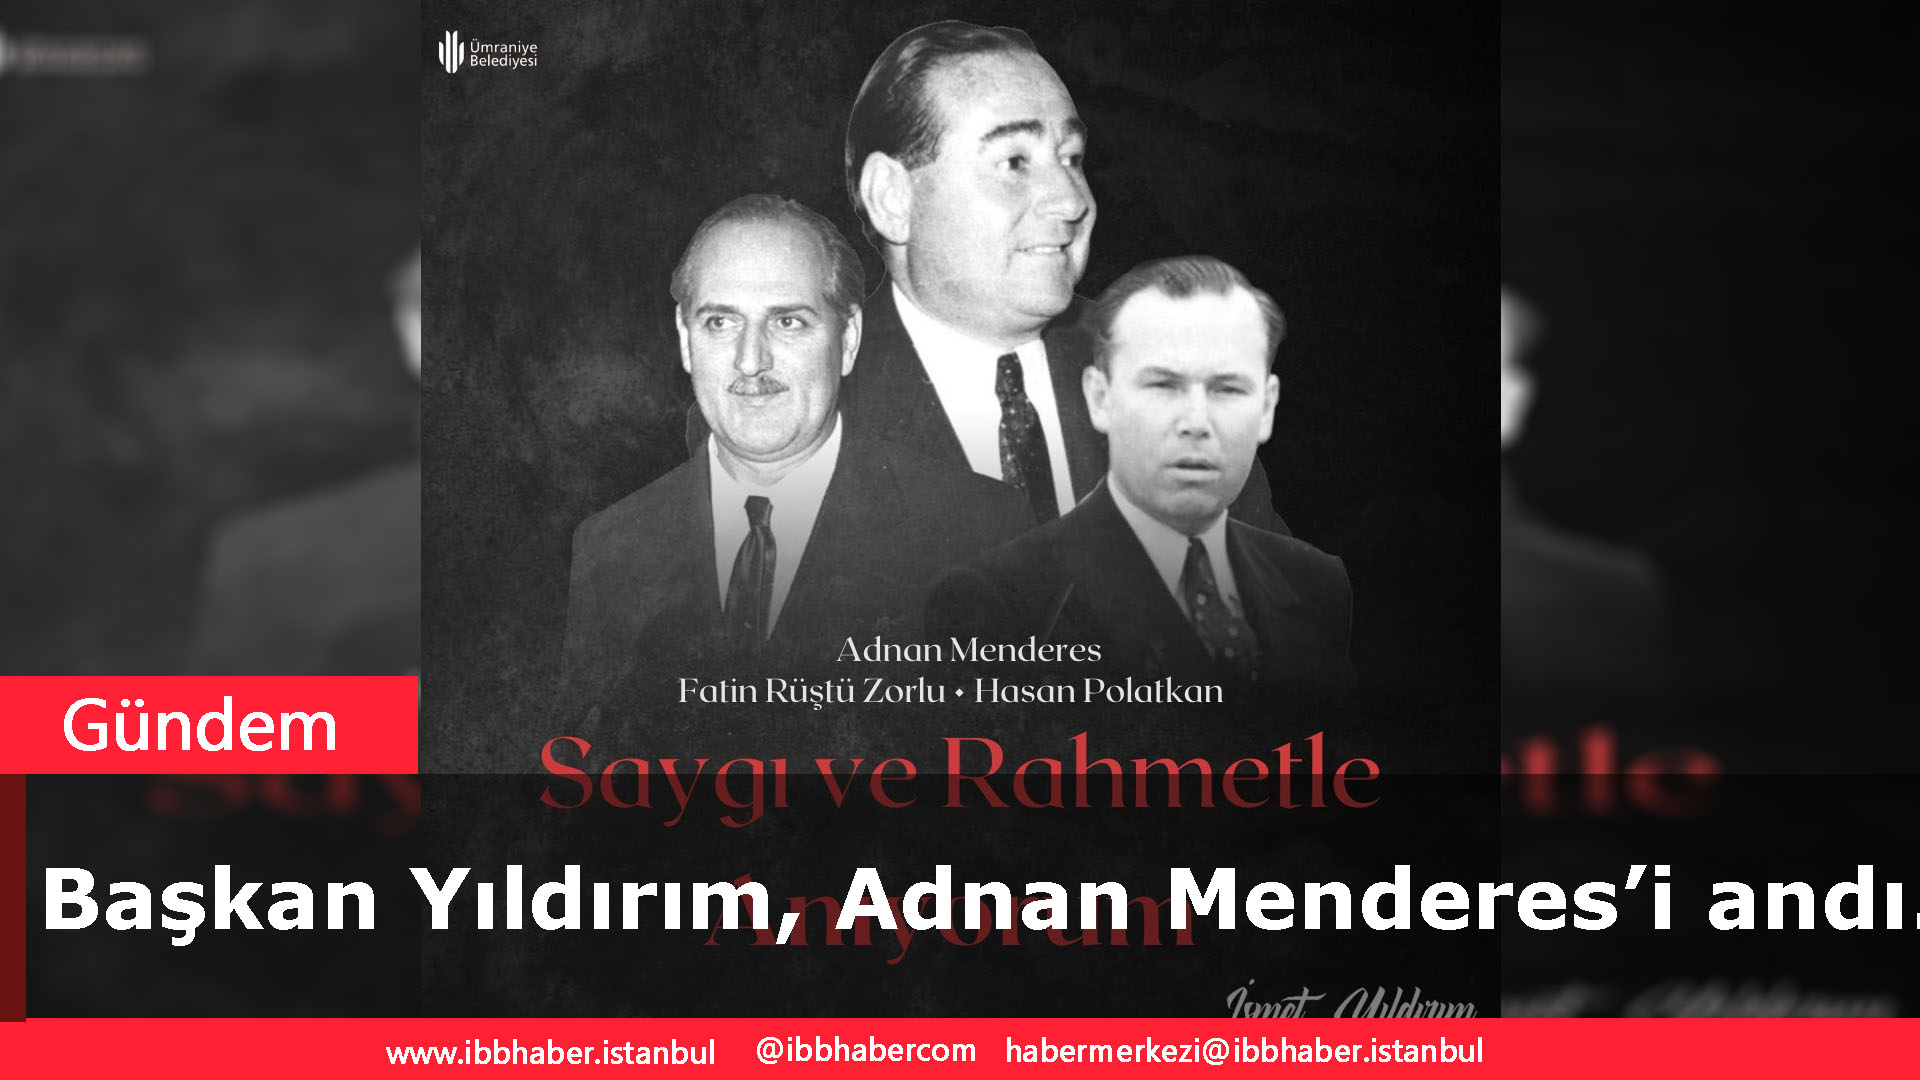 Başkan Yıldırım, Adnan Menderes’i andı.